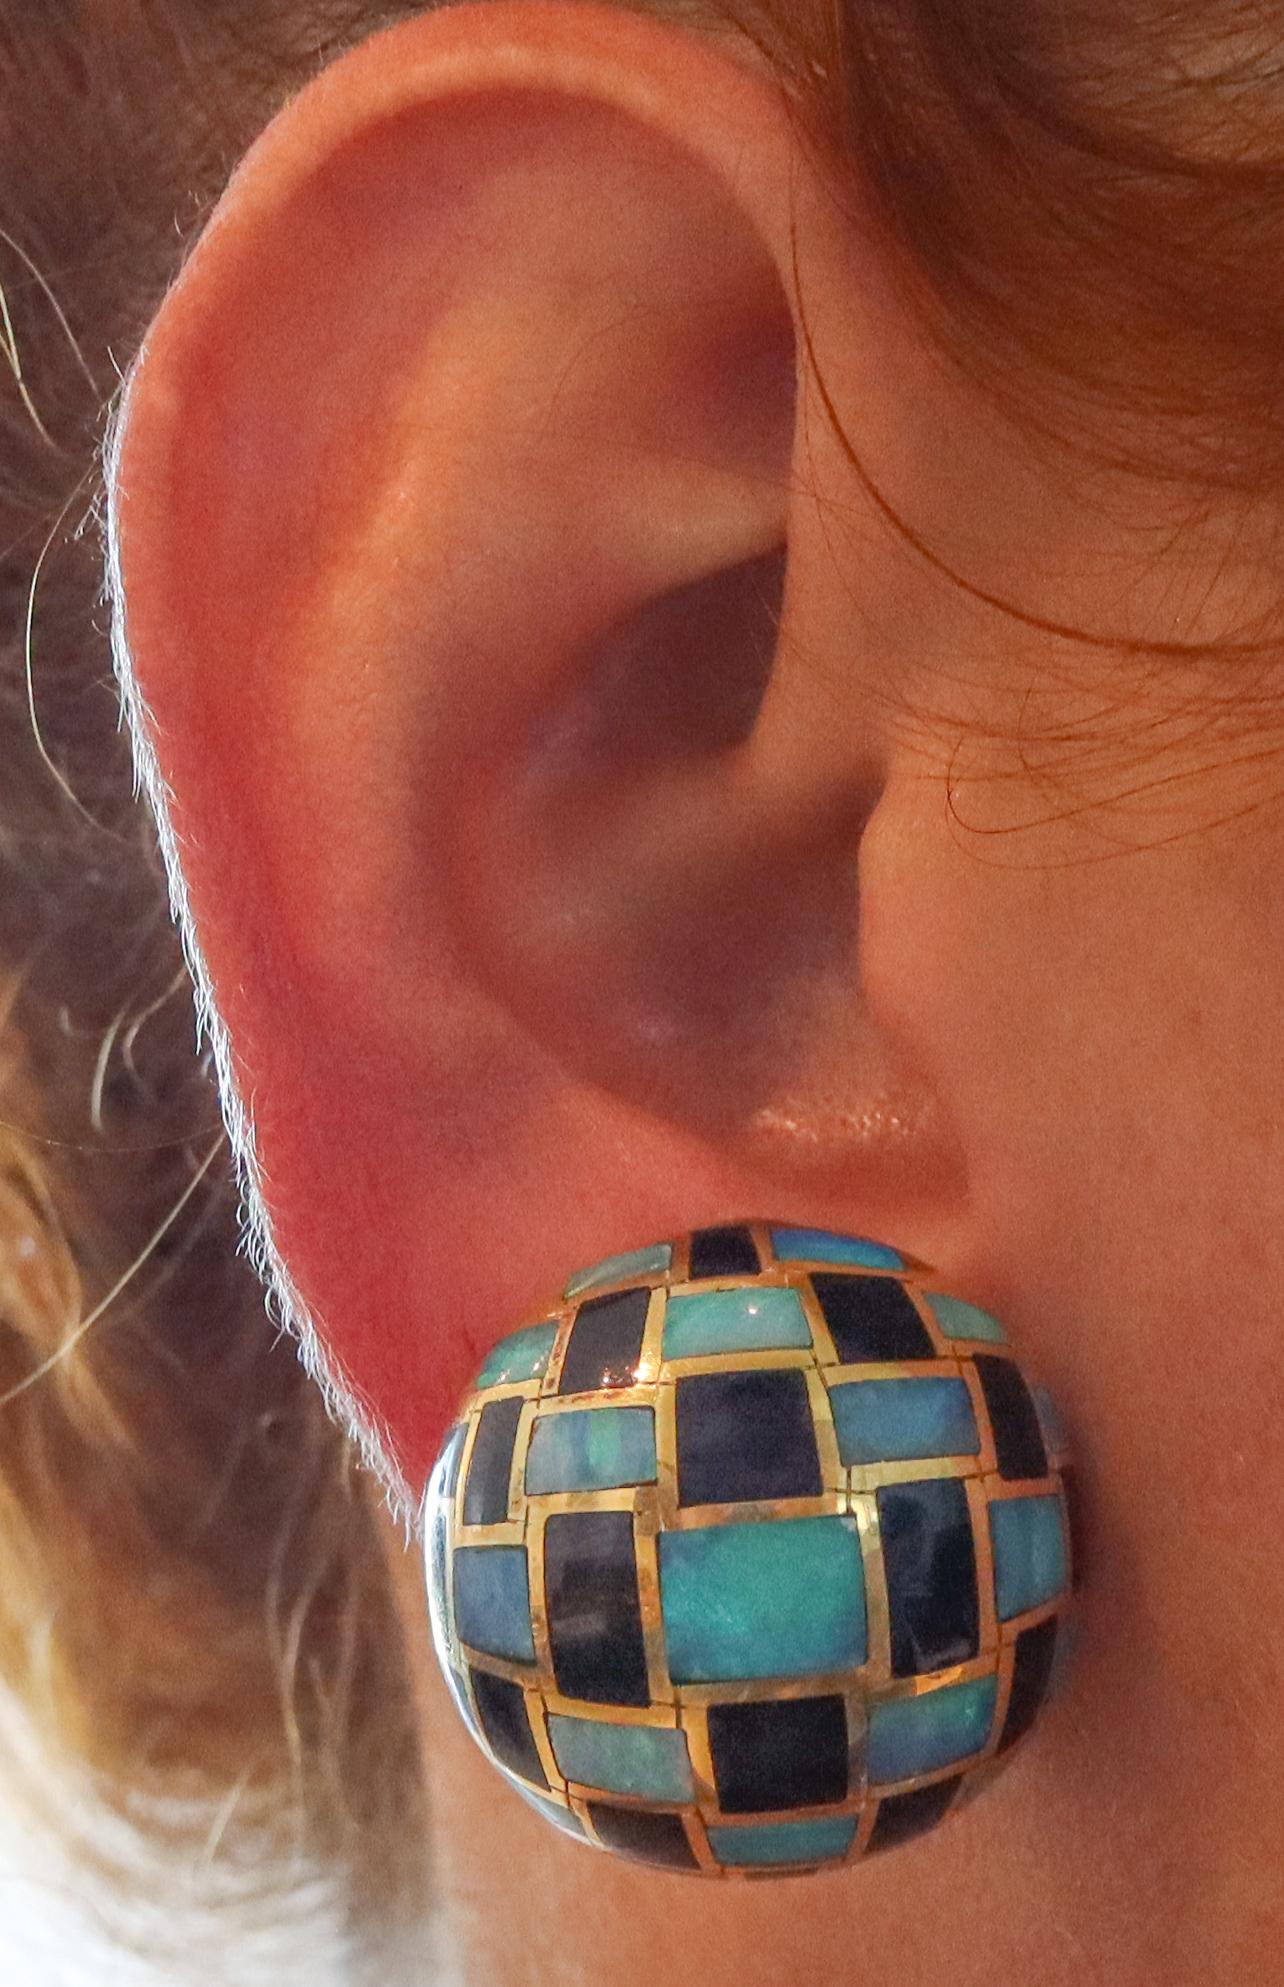 Geometrische Bomben-Ohrringe, entworfen von Angela Cummings für Tiffany & Co.

Wunderschönes geometrisches Bombenpaar von Angela Cummings aus New York, Ende der 1970er Jahre. Dieses Paar gewölbter Ohrringe wurde sorgfältig aus massivem 18-karätigem